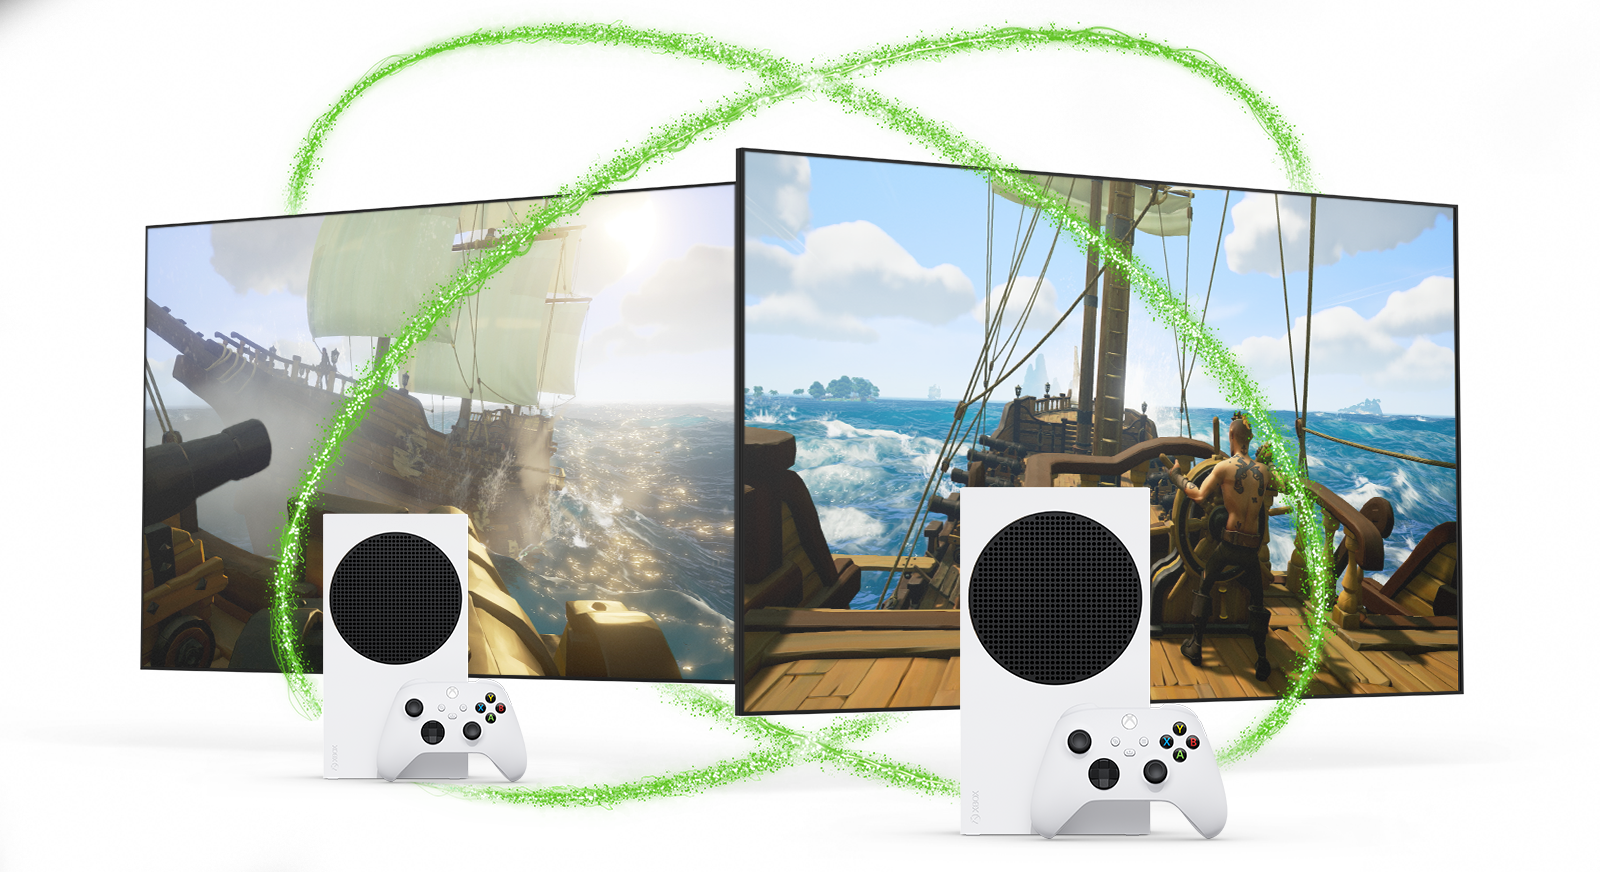 tos Ligero apretado Xbox Live Gold: Multiplayer for Everyone | Xbox